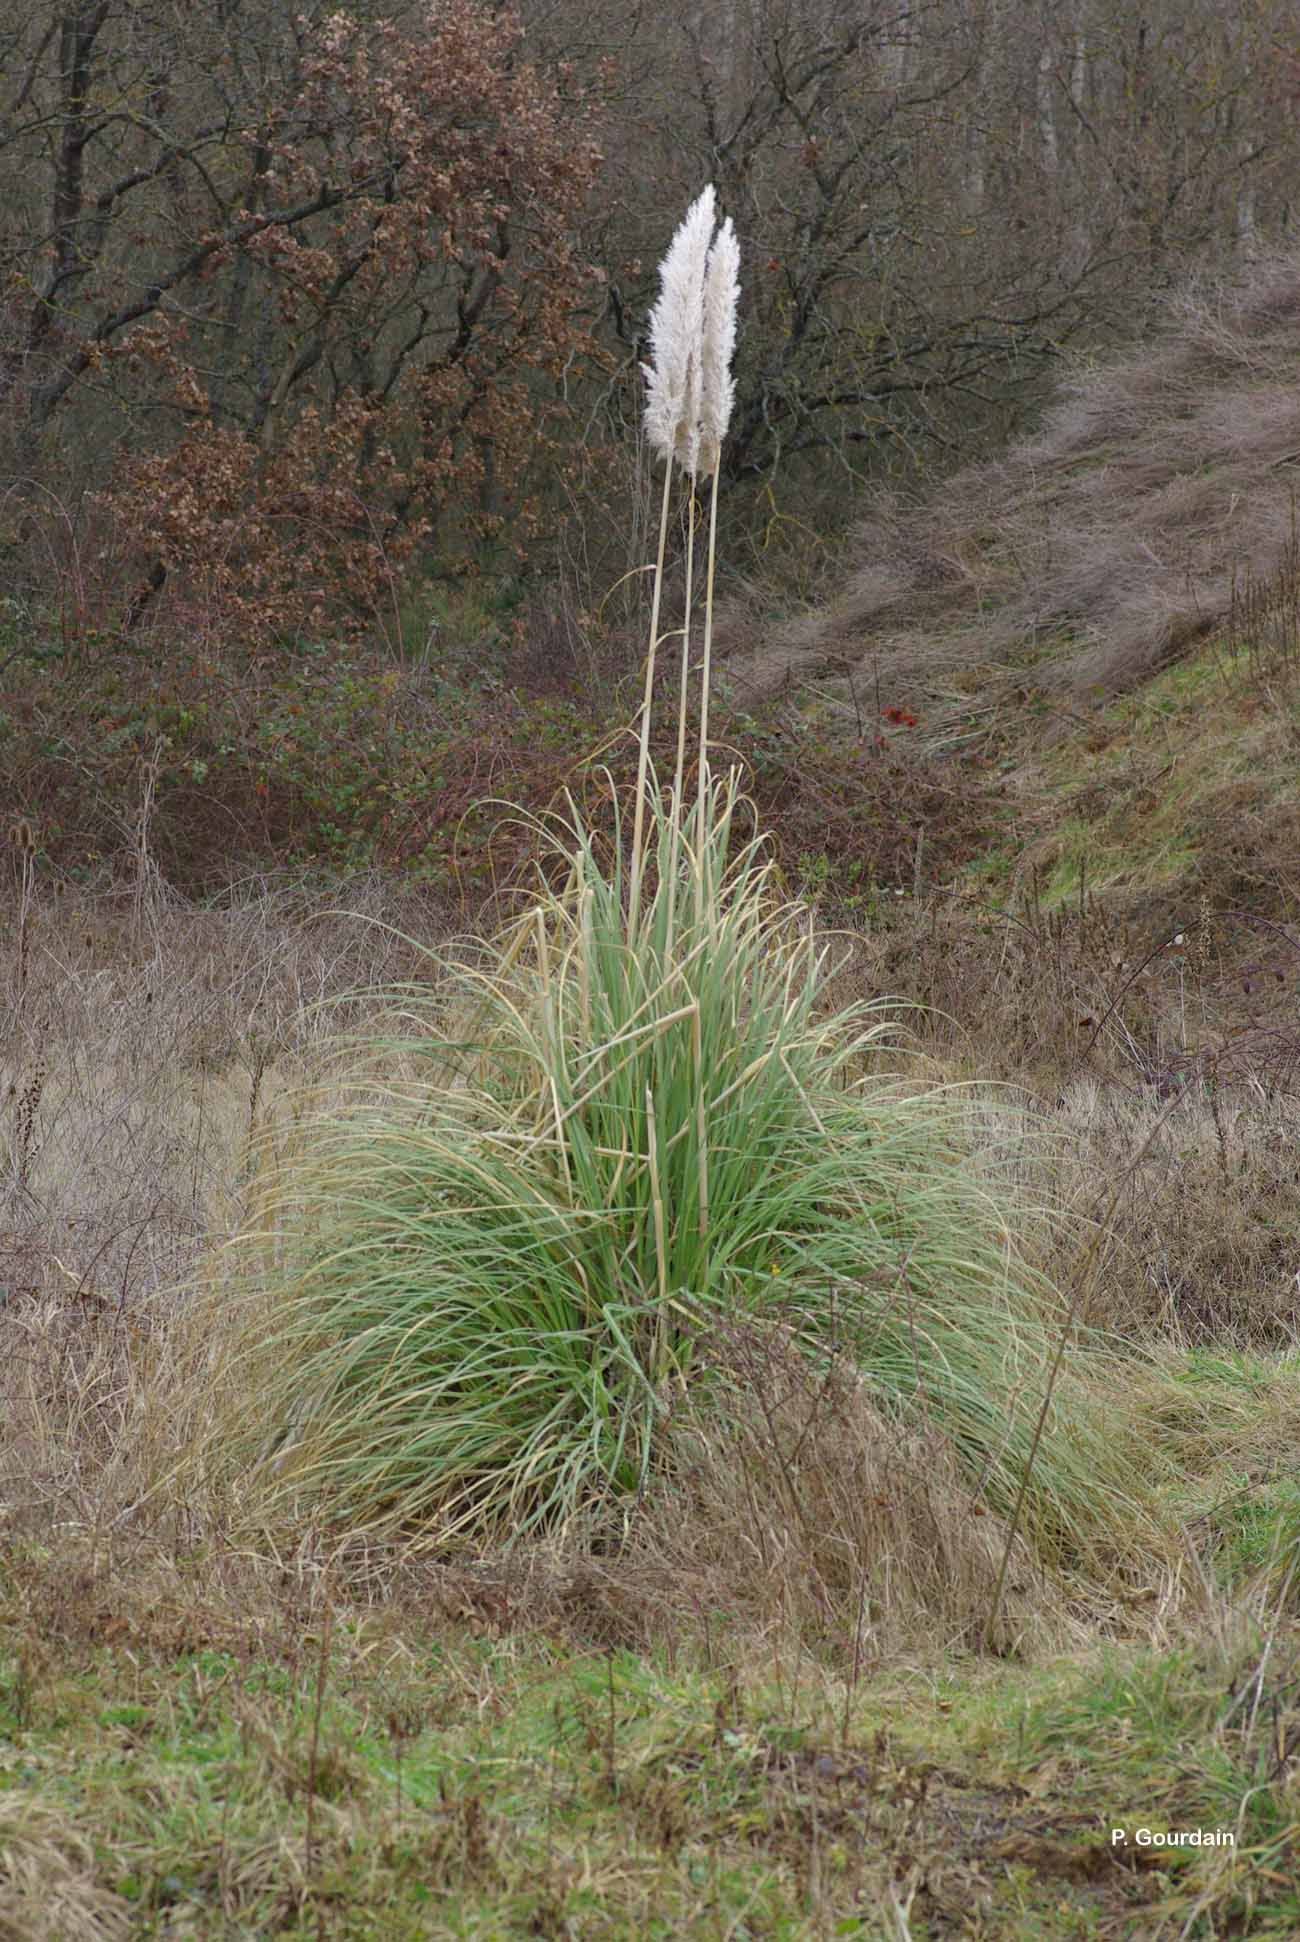 Image of Uruguayan pampas grass